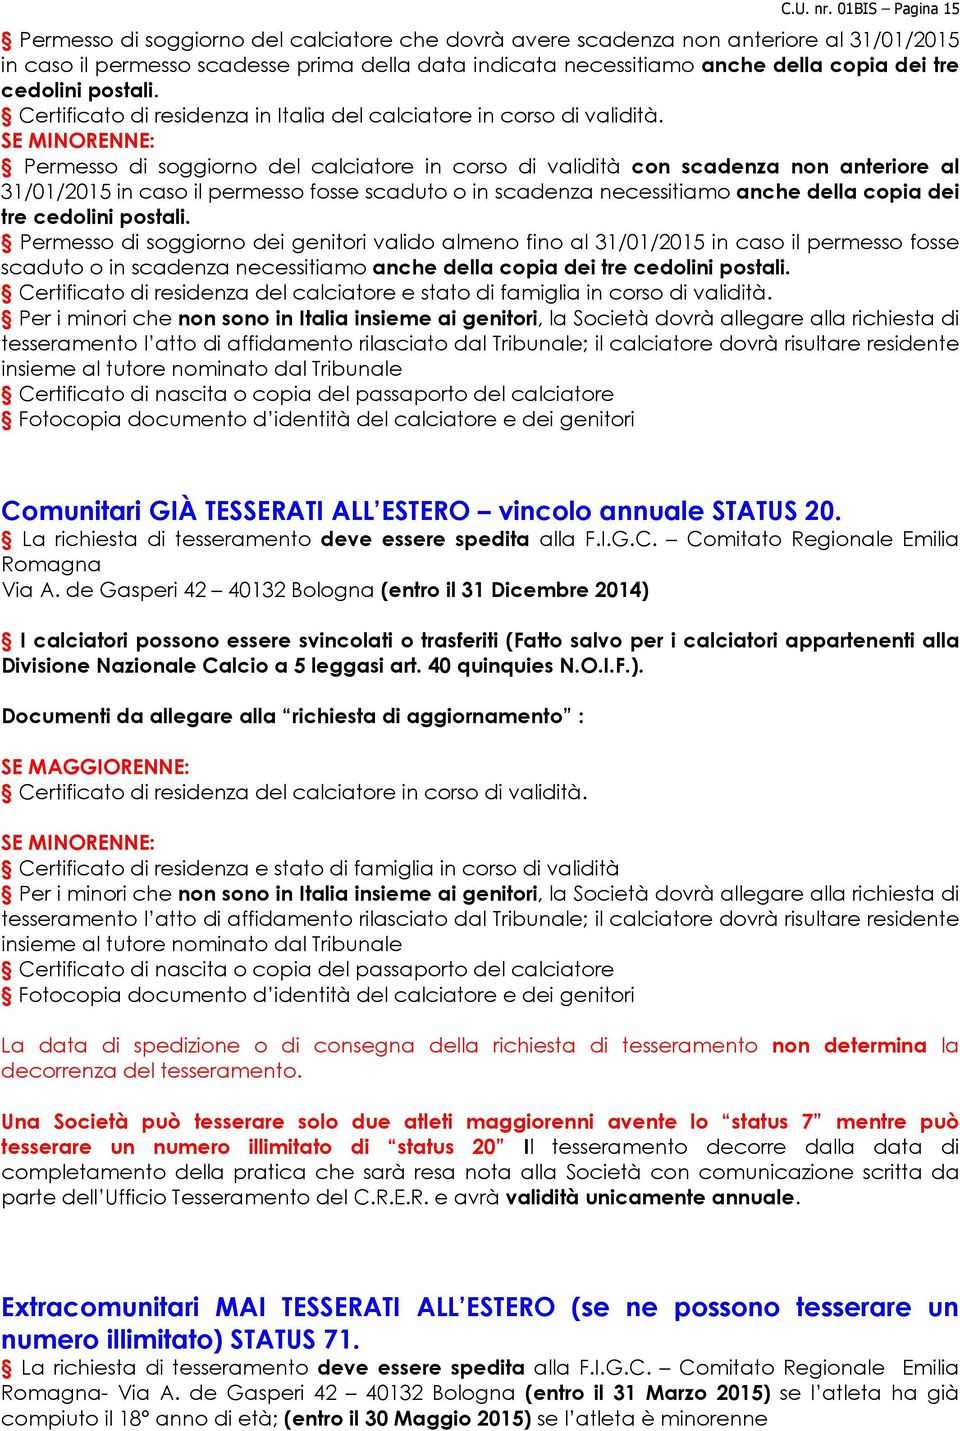 cedolini postali. Certificato di residenza in Italia del calciatore in corso di validità.